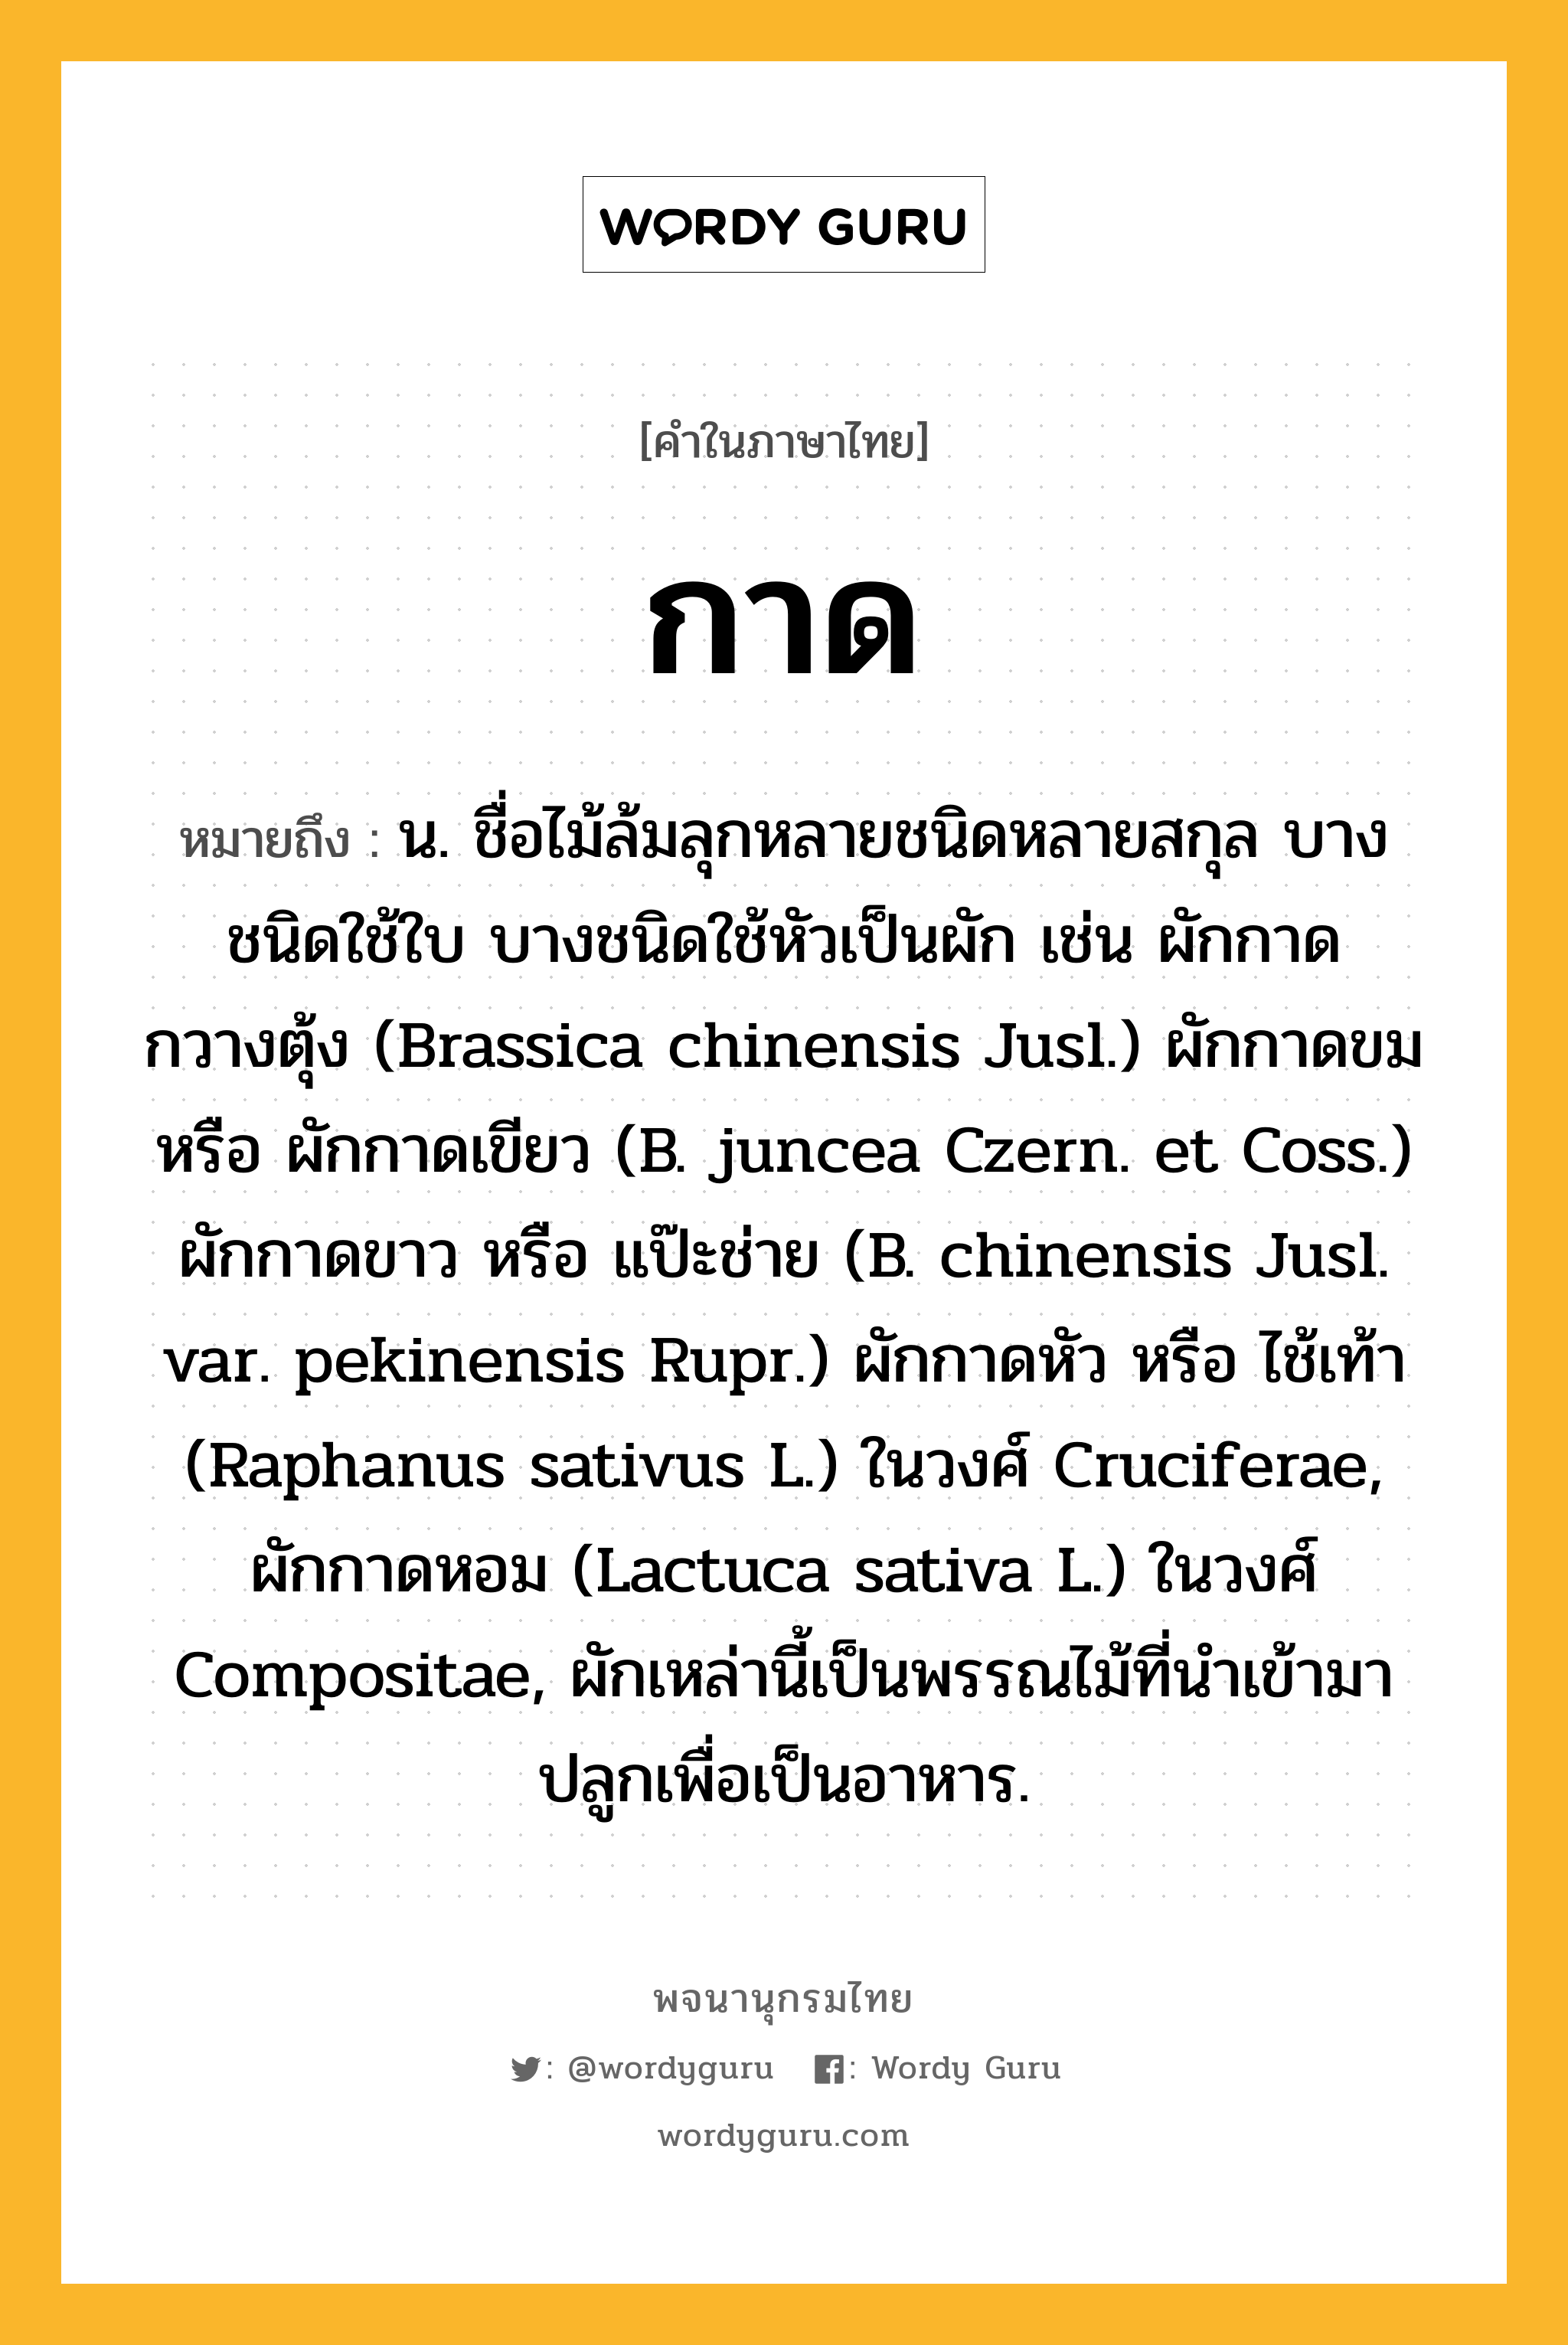 กาด ความหมาย หมายถึงอะไร?, คำในภาษาไทย กาด หมายถึง น. ชื่อไม้ล้มลุกหลายชนิดหลายสกุล บางชนิดใช้ใบ บางชนิดใช้หัวเป็นผัก เช่น ผักกาดกวางตุ้ง (Brassica chinensis Jusl.) ผักกาดขม หรือ ผักกาดเขียว (B. juncea Czern. et Coss.) ผักกาดขาว หรือ แป๊ะช่าย (B. chinensis Jusl. var. pekinensis Rupr.) ผักกาดหัว หรือ ไช้เท้า (Raphanus sativus L.) ในวงศ์ Cruciferae, ผักกาดหอม (Lactuca sativa L.) ในวงศ์ Compositae, ผักเหล่านี้เป็นพรรณไม้ที่นําเข้ามาปลูกเพื่อเป็นอาหาร.